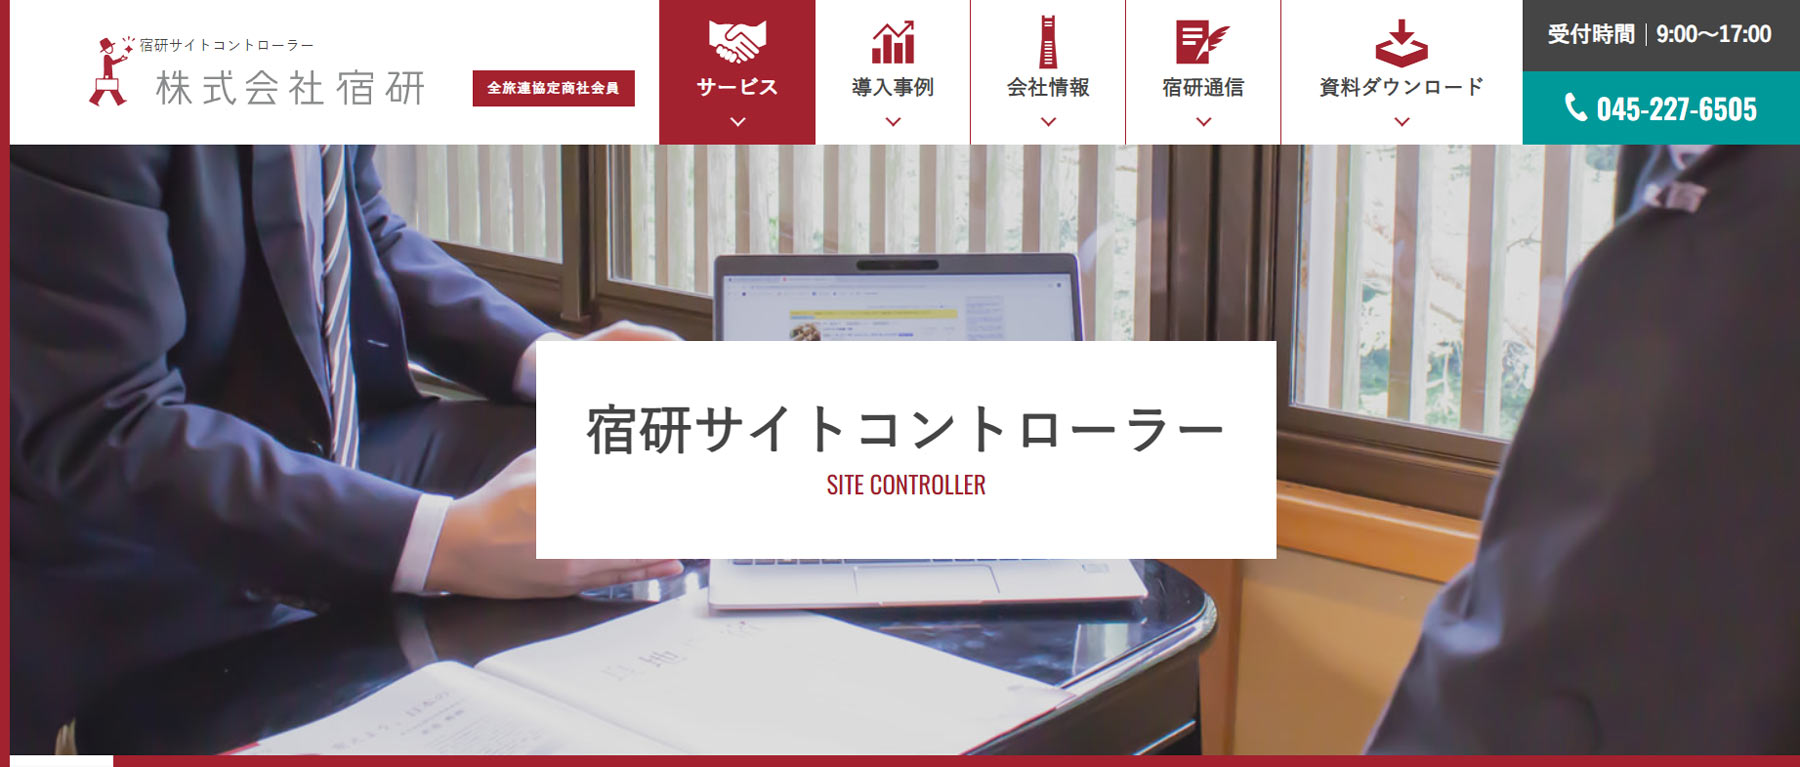 宿研サイトコントローラー公式Webサイト